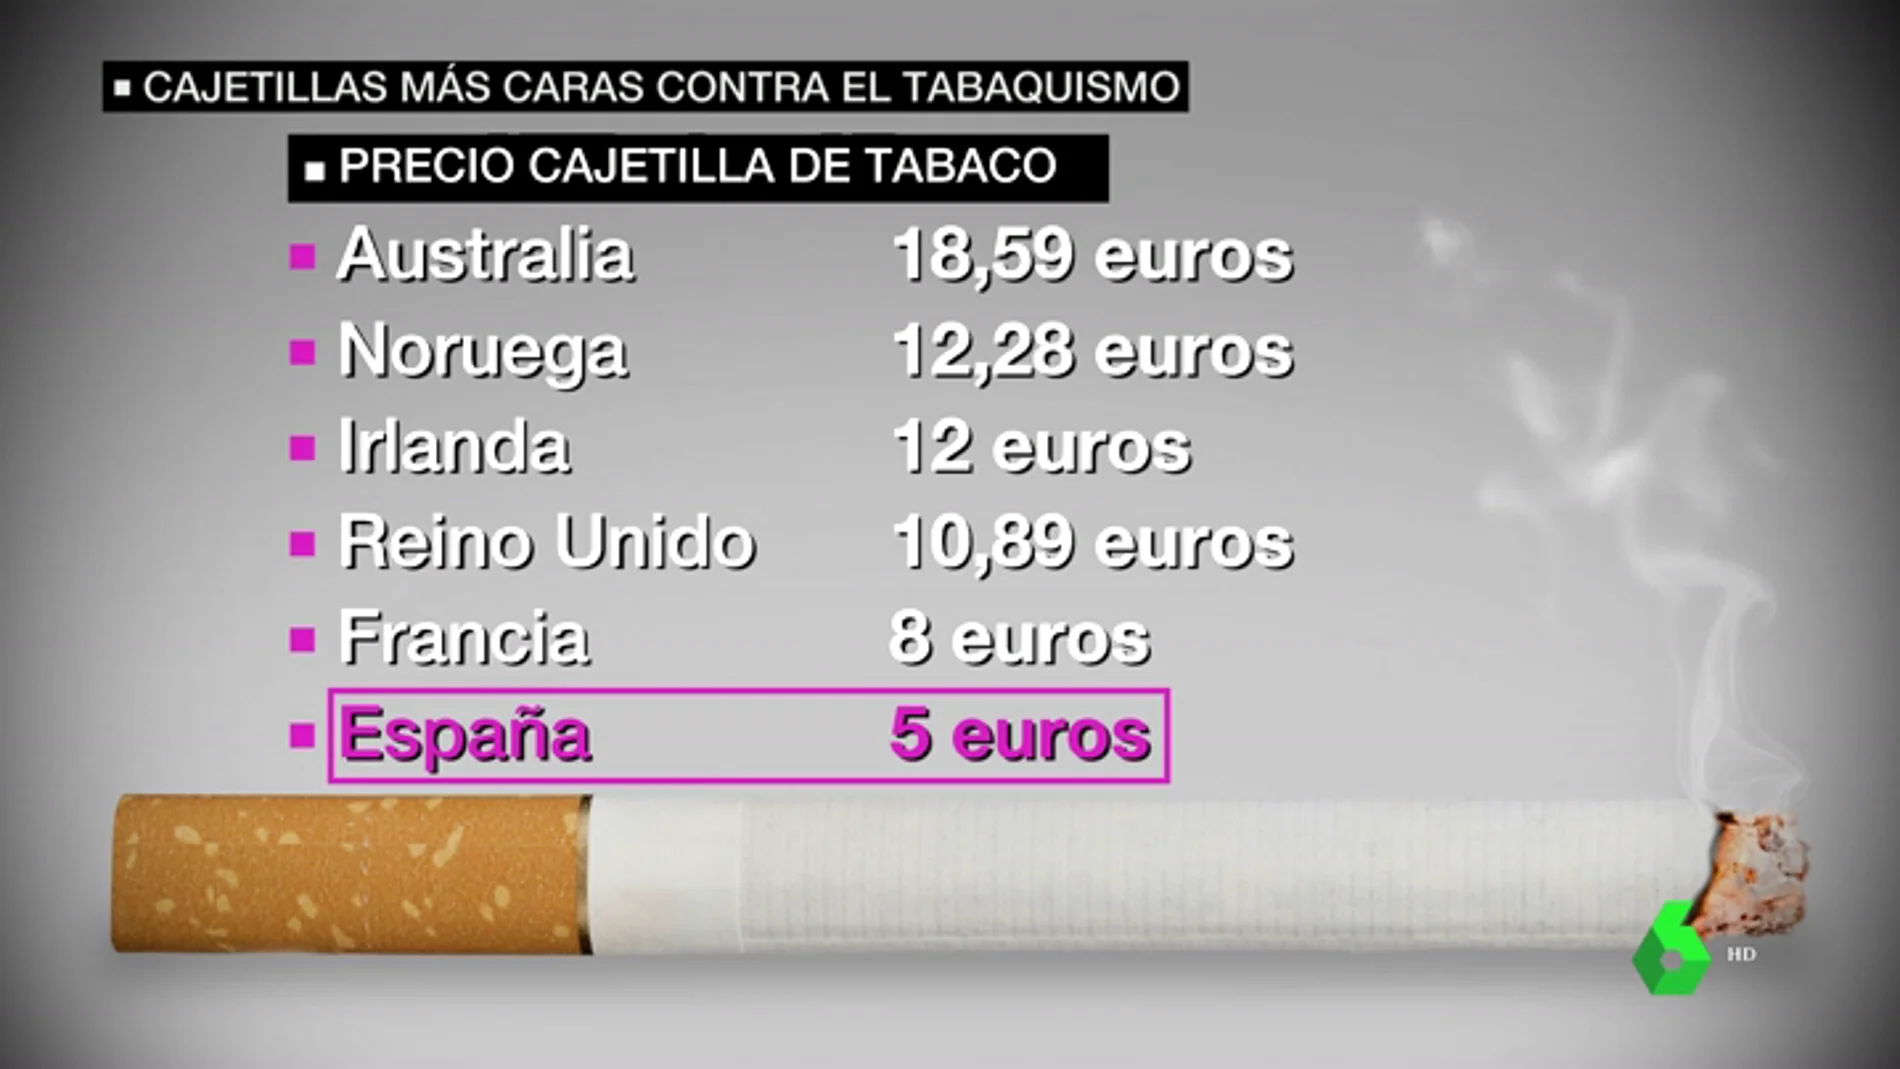 La OMS pide cajetillas más caras contra el tabaquismo